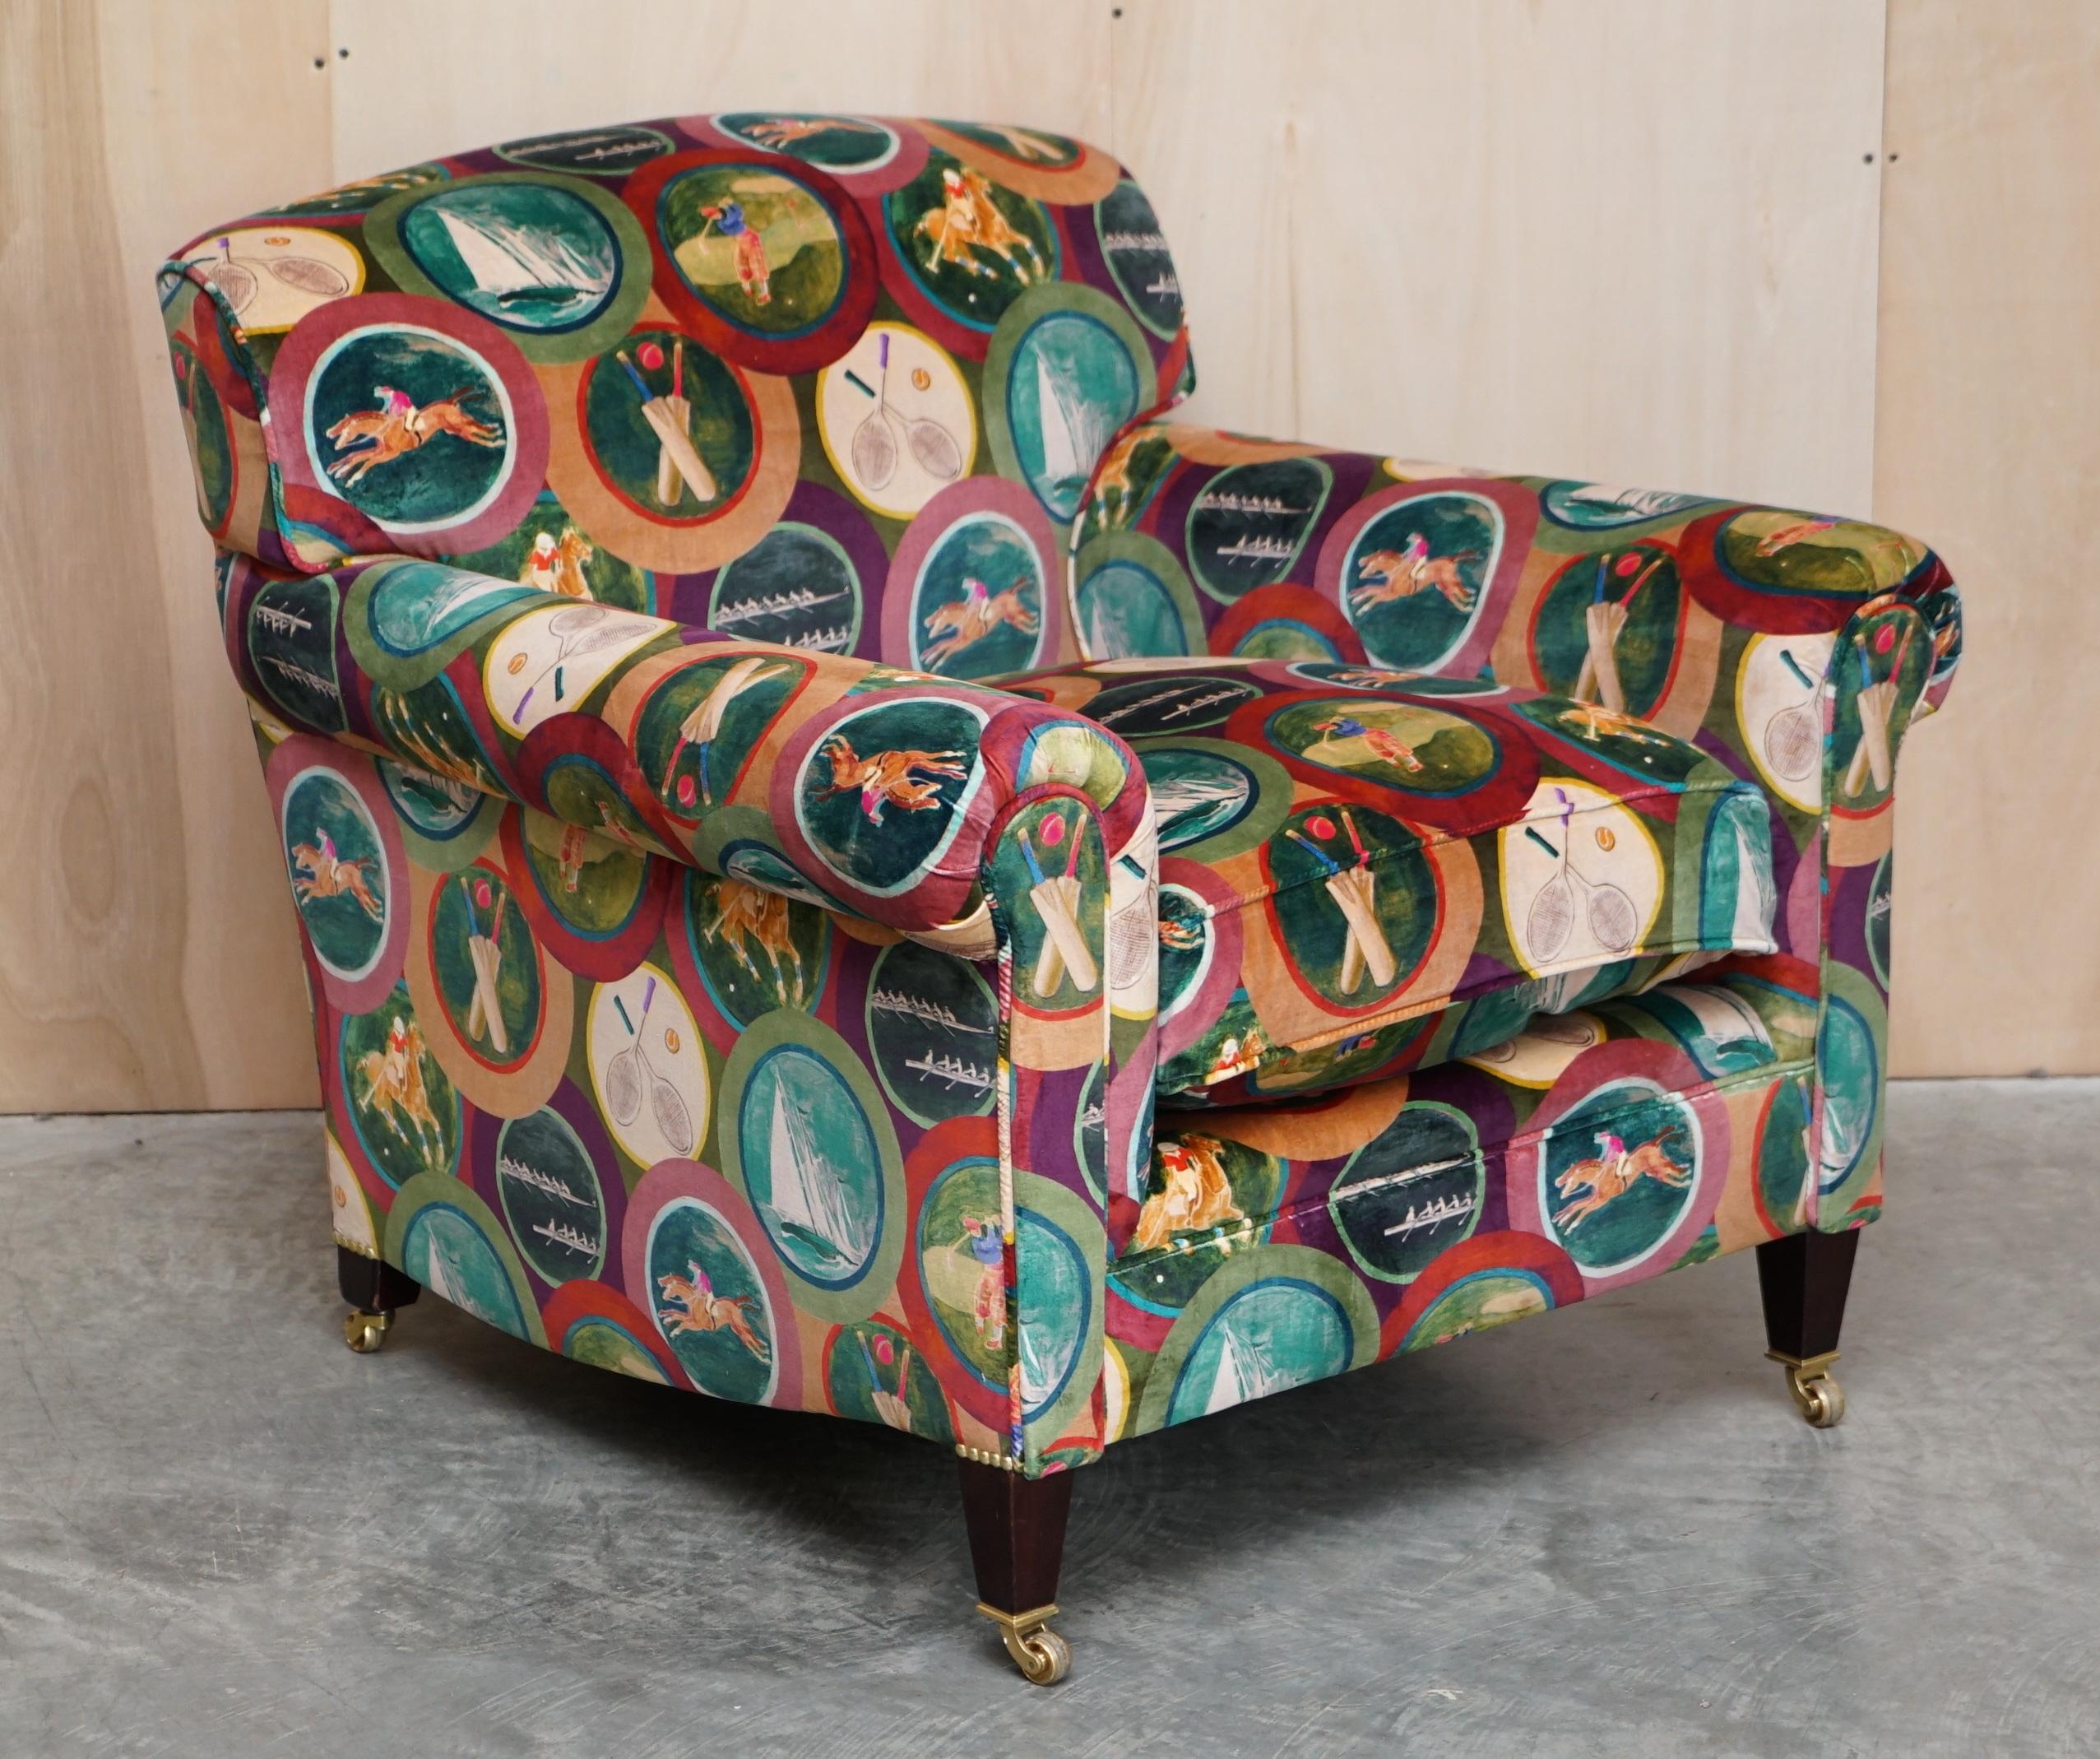 Nous sommes ravis de vous proposer cette paire unique de fauteuils super luxueux George Smith, Full Scroll Arm, recouverts d'un tout nouveau revêtement en velours de soie Mulberry Sporting Life. 

Ces chaises me sont exclusives, j'ai un canapé